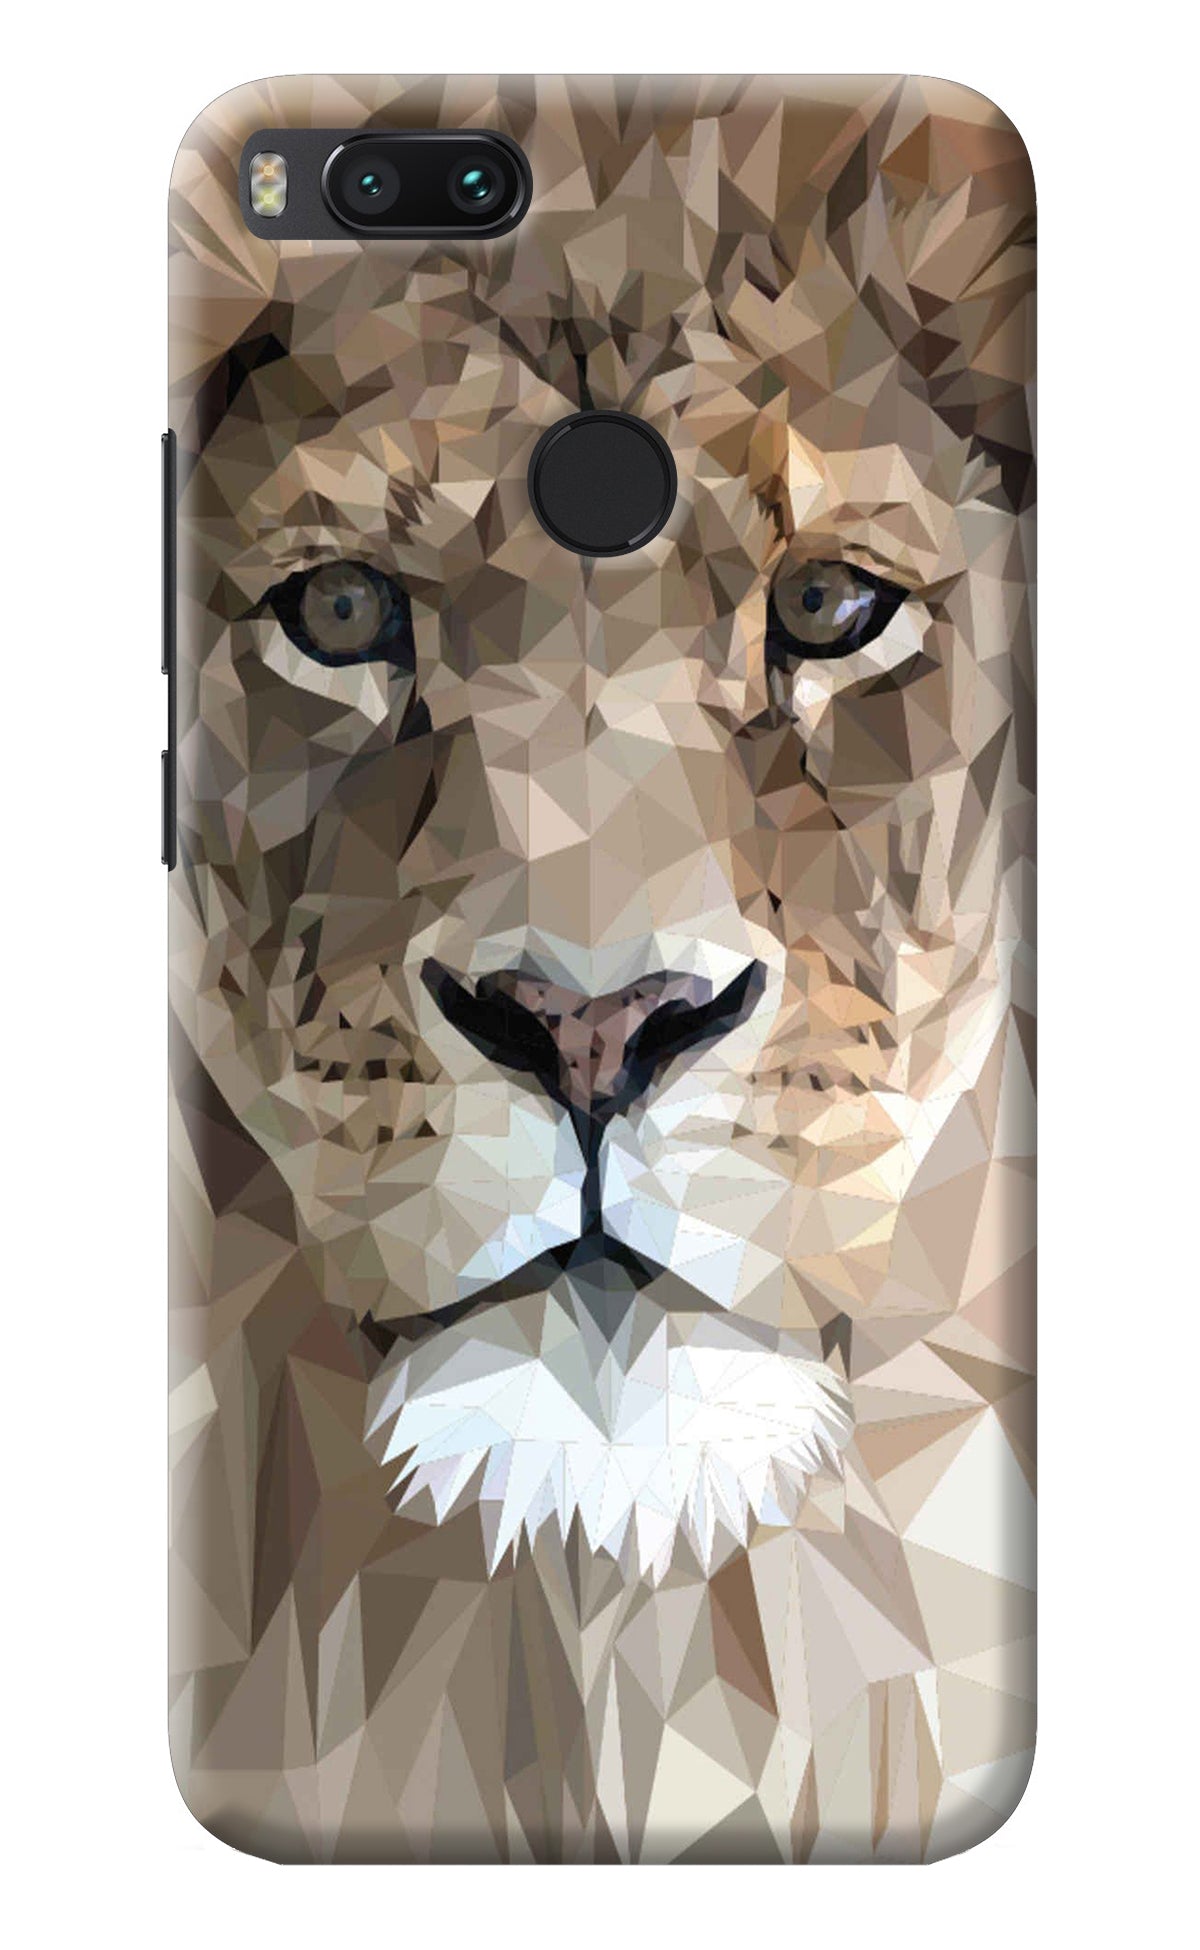 Lion Art Mi A1 Back Cover